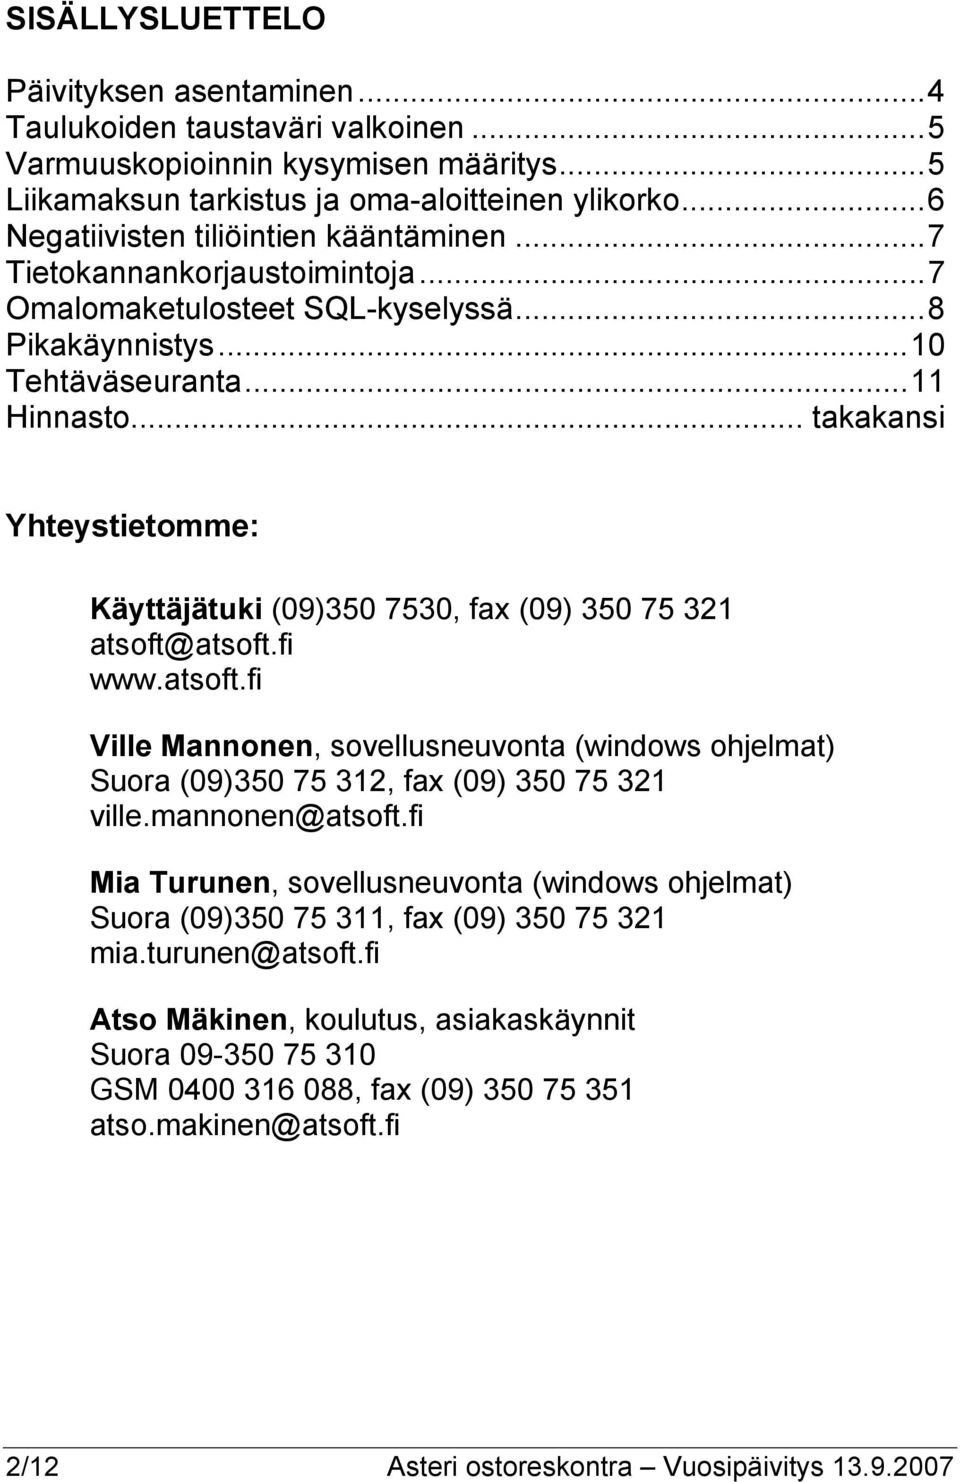 .. takakansi Yhteystietomme: Käyttäjätuki (09)350 7530, fax (09) 350 75 321 atsoft@atsoft.fi www.atsoft.fi Ville Mannonen, sovellusneuvonta (windows ohjelmat) Suora (09)350 75 312, fax (09) 350 75 321 ville.